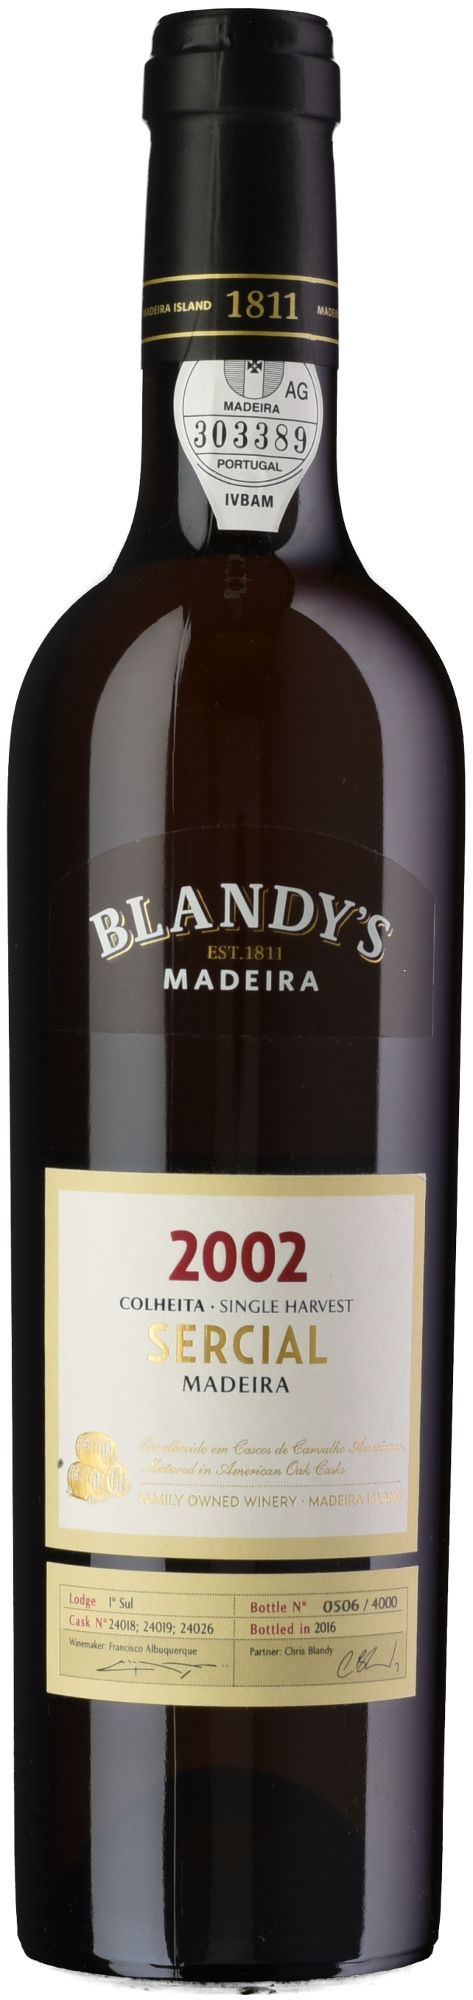 Blandy-Sercial-Colheita-2002-Madeira